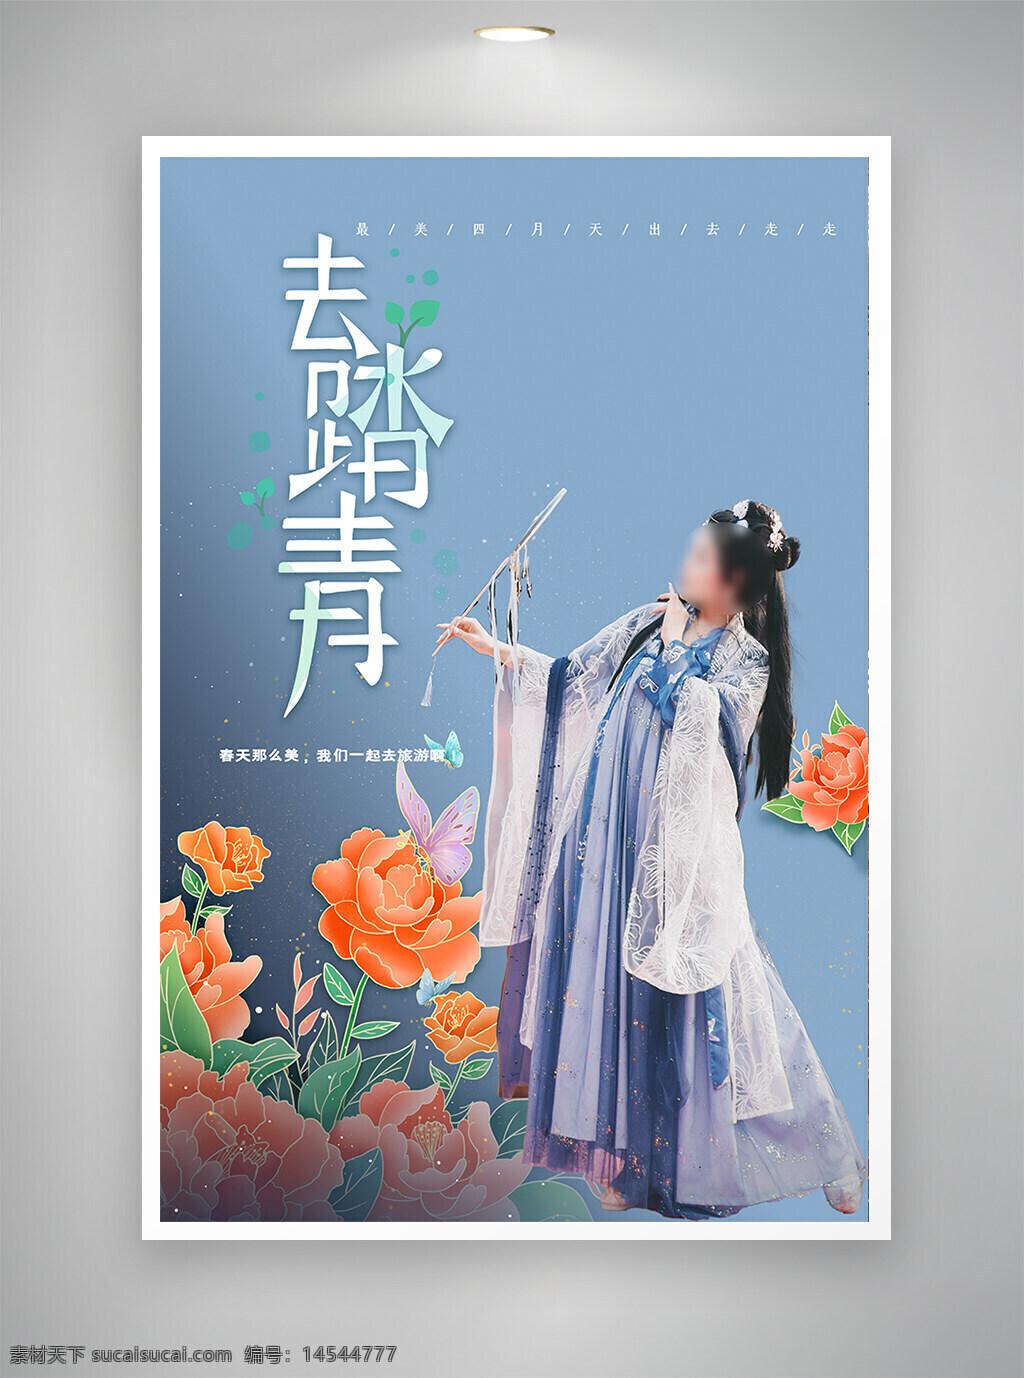 古风海报 中国风海报 促销海报 节日海报 踏青时节